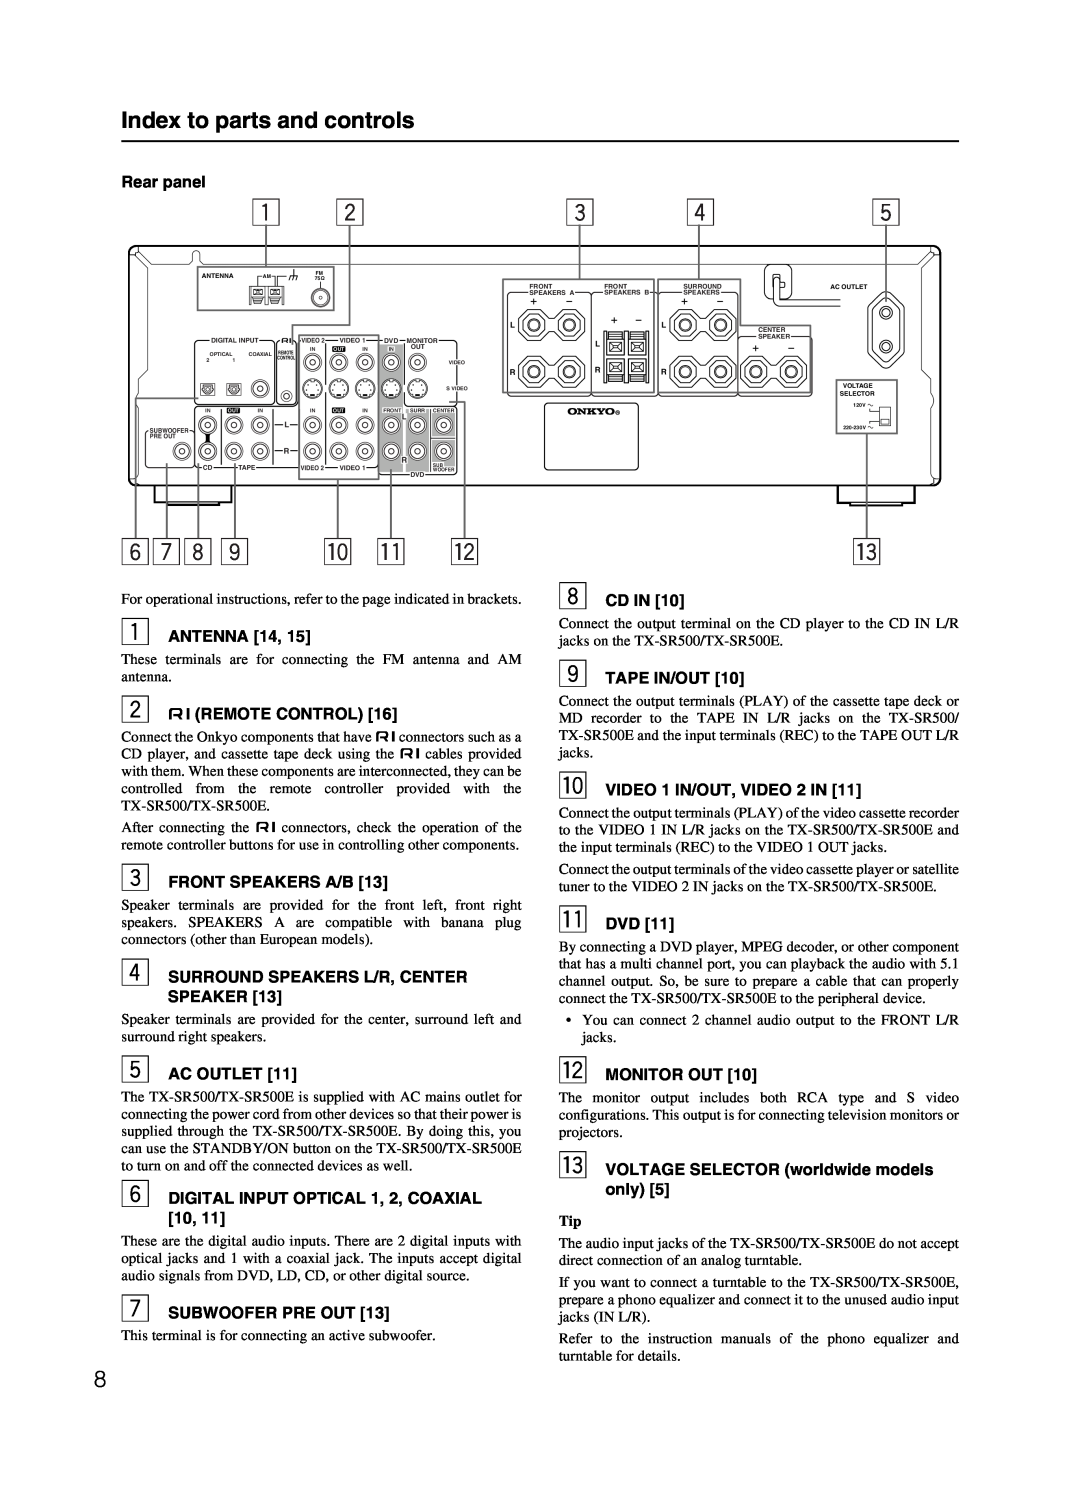 Onkyo TX-SR500 appendix 678 9 p q w, Index to parts and controls 